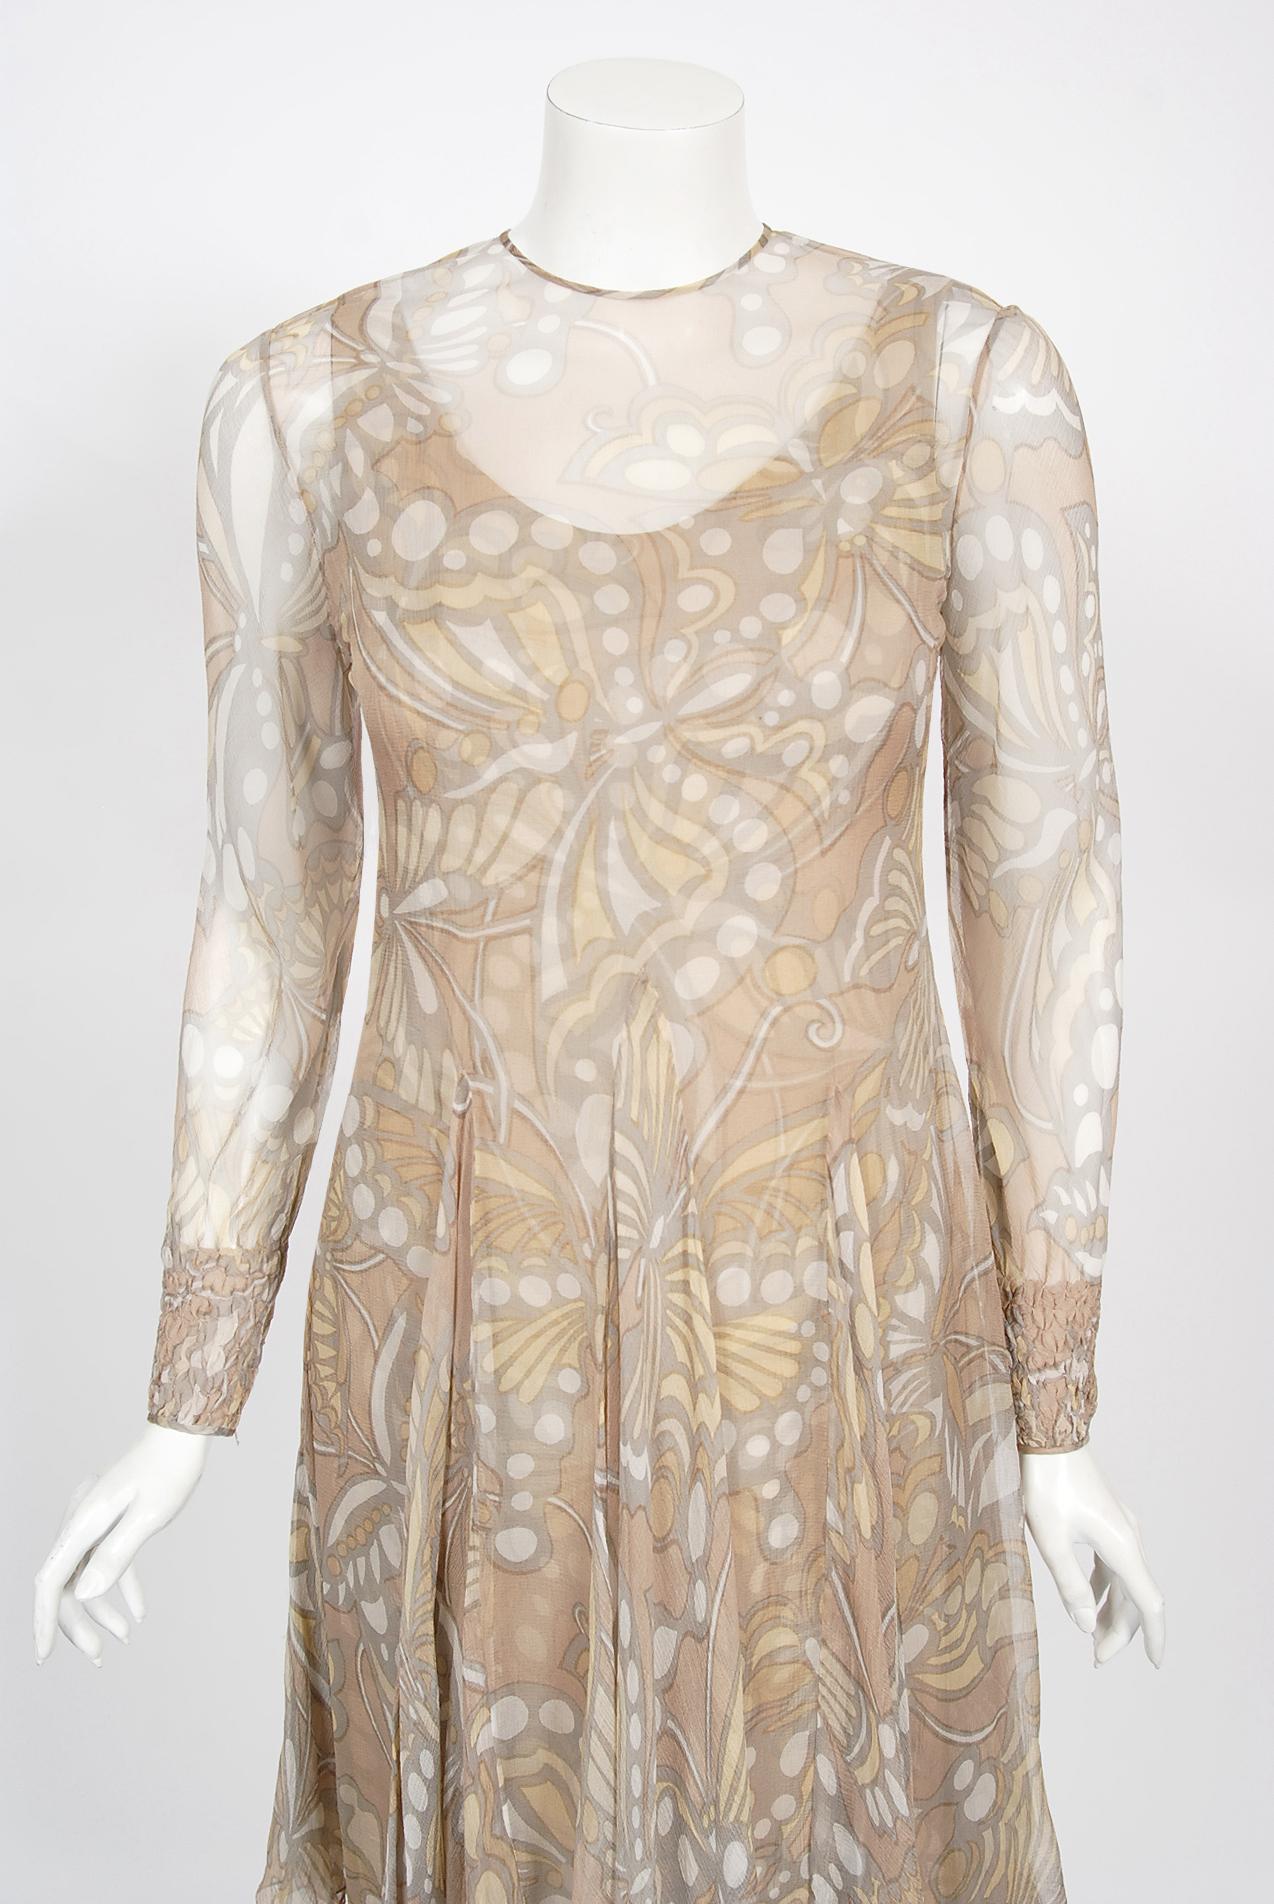 Atemberaubendes Galanos Couture-Kleid mit Schmetterlingsdruck aus nackter Seide und Chiffon aus seiner Kollektion von 1969. James Galanos' langjähriges Engagement für hervorragende handwerkliche und gestalterische Leistungen bildete die Grundlage